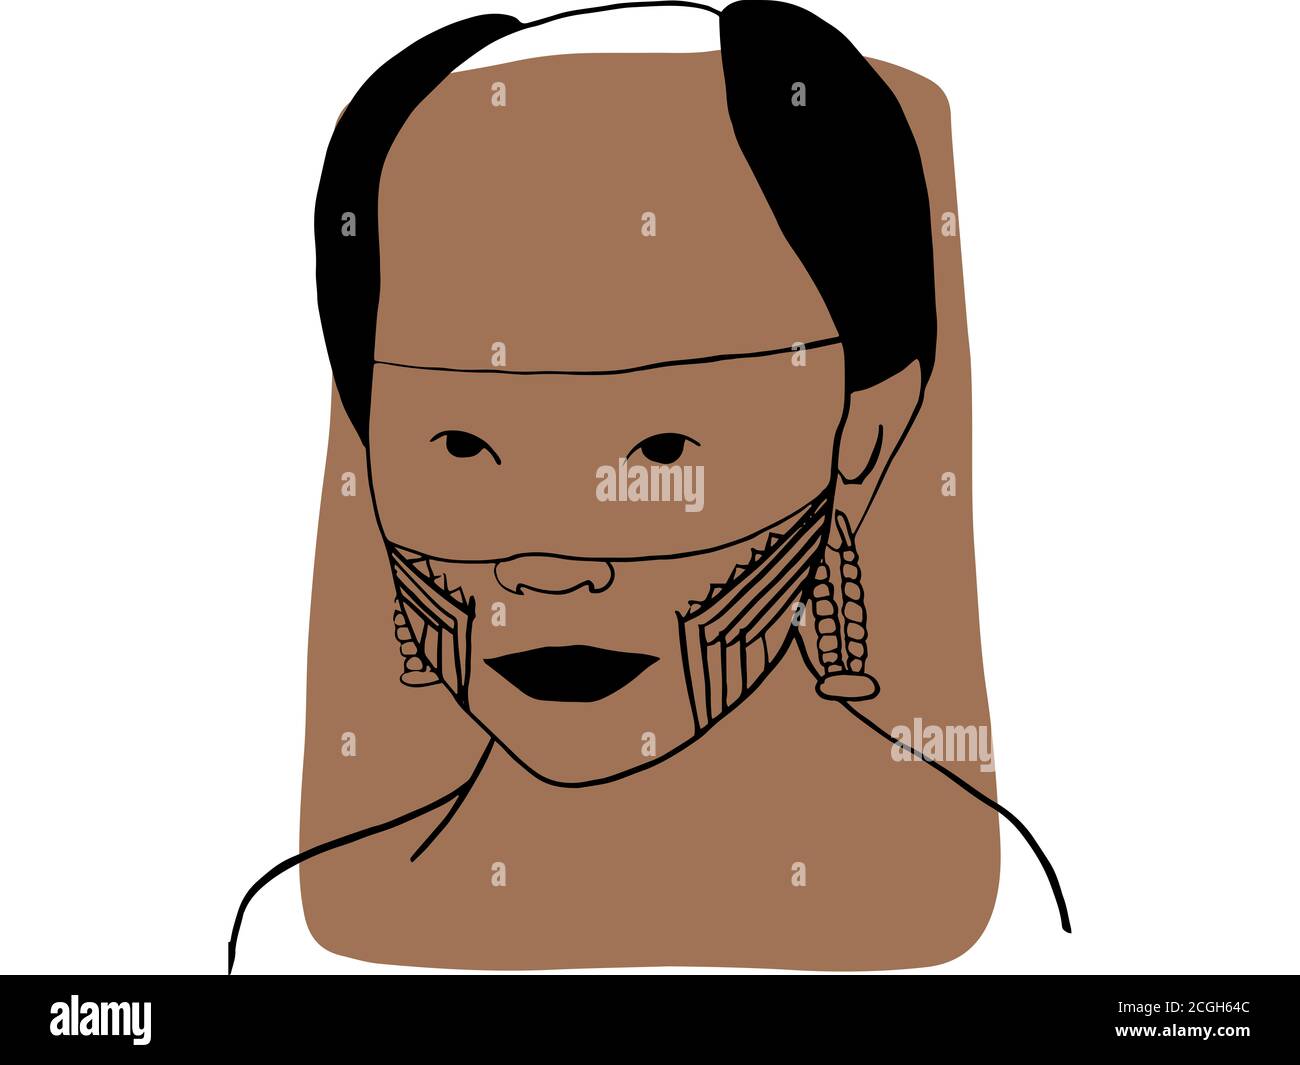 Disegnate a mano il ritratto di un uomo tribale con un campione di colore marrone. Collegazione astratta di persone e toni della pelle diversi. Concetto di diversità Foto Stock